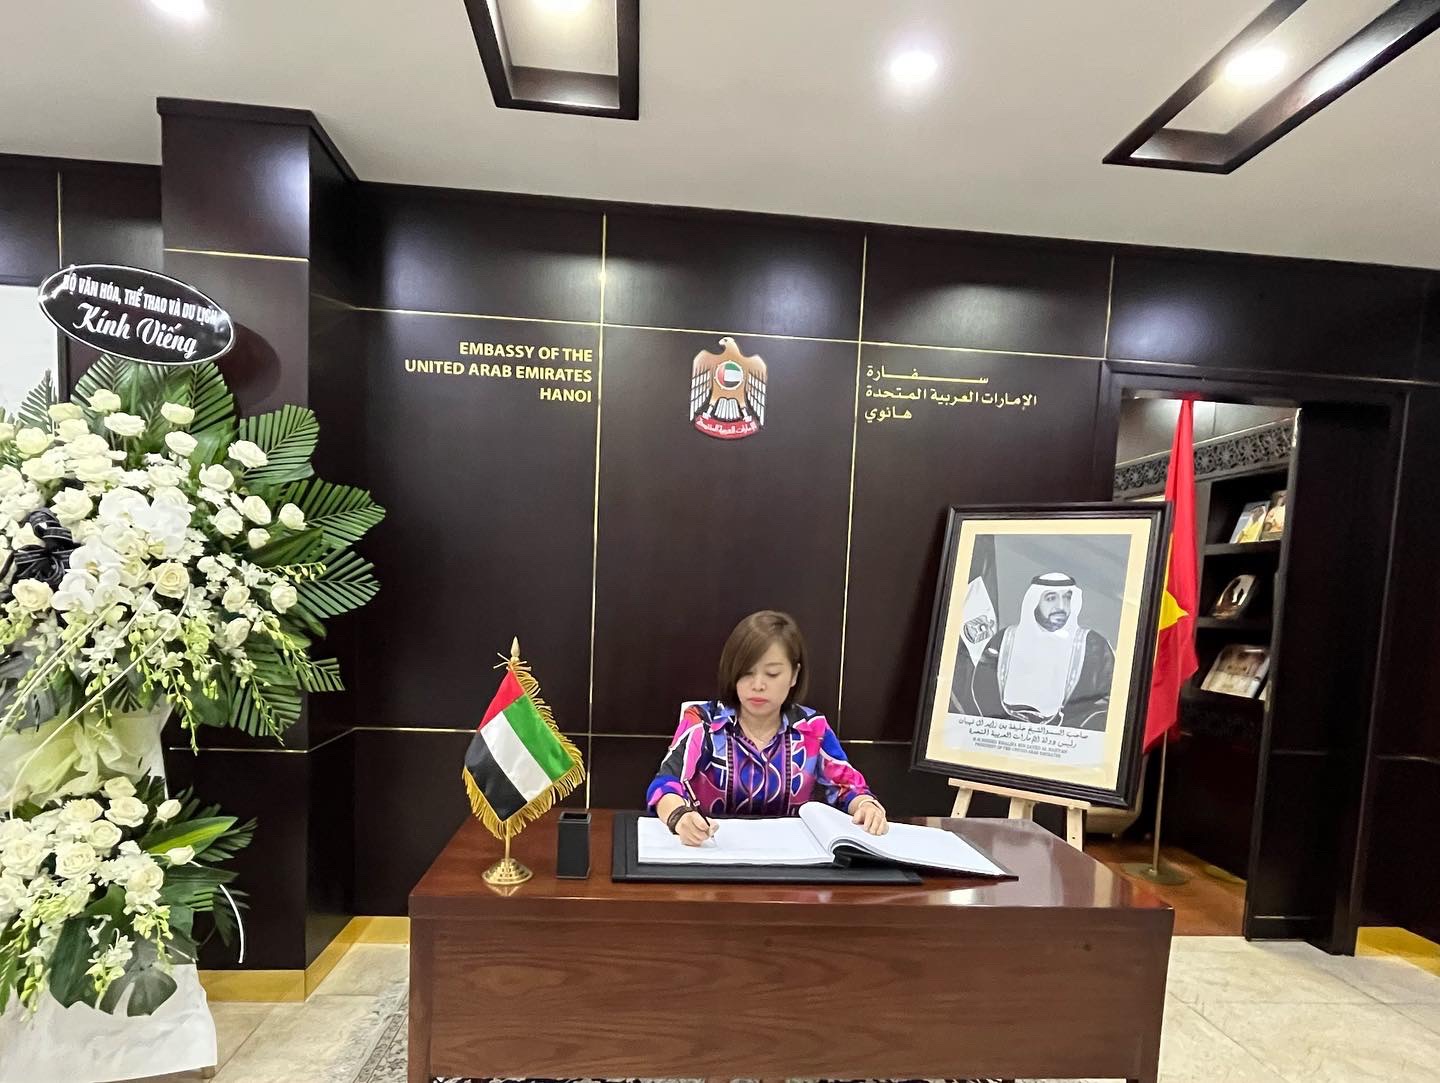 Oud VietNam visited the UAE Embassy in Hanoya